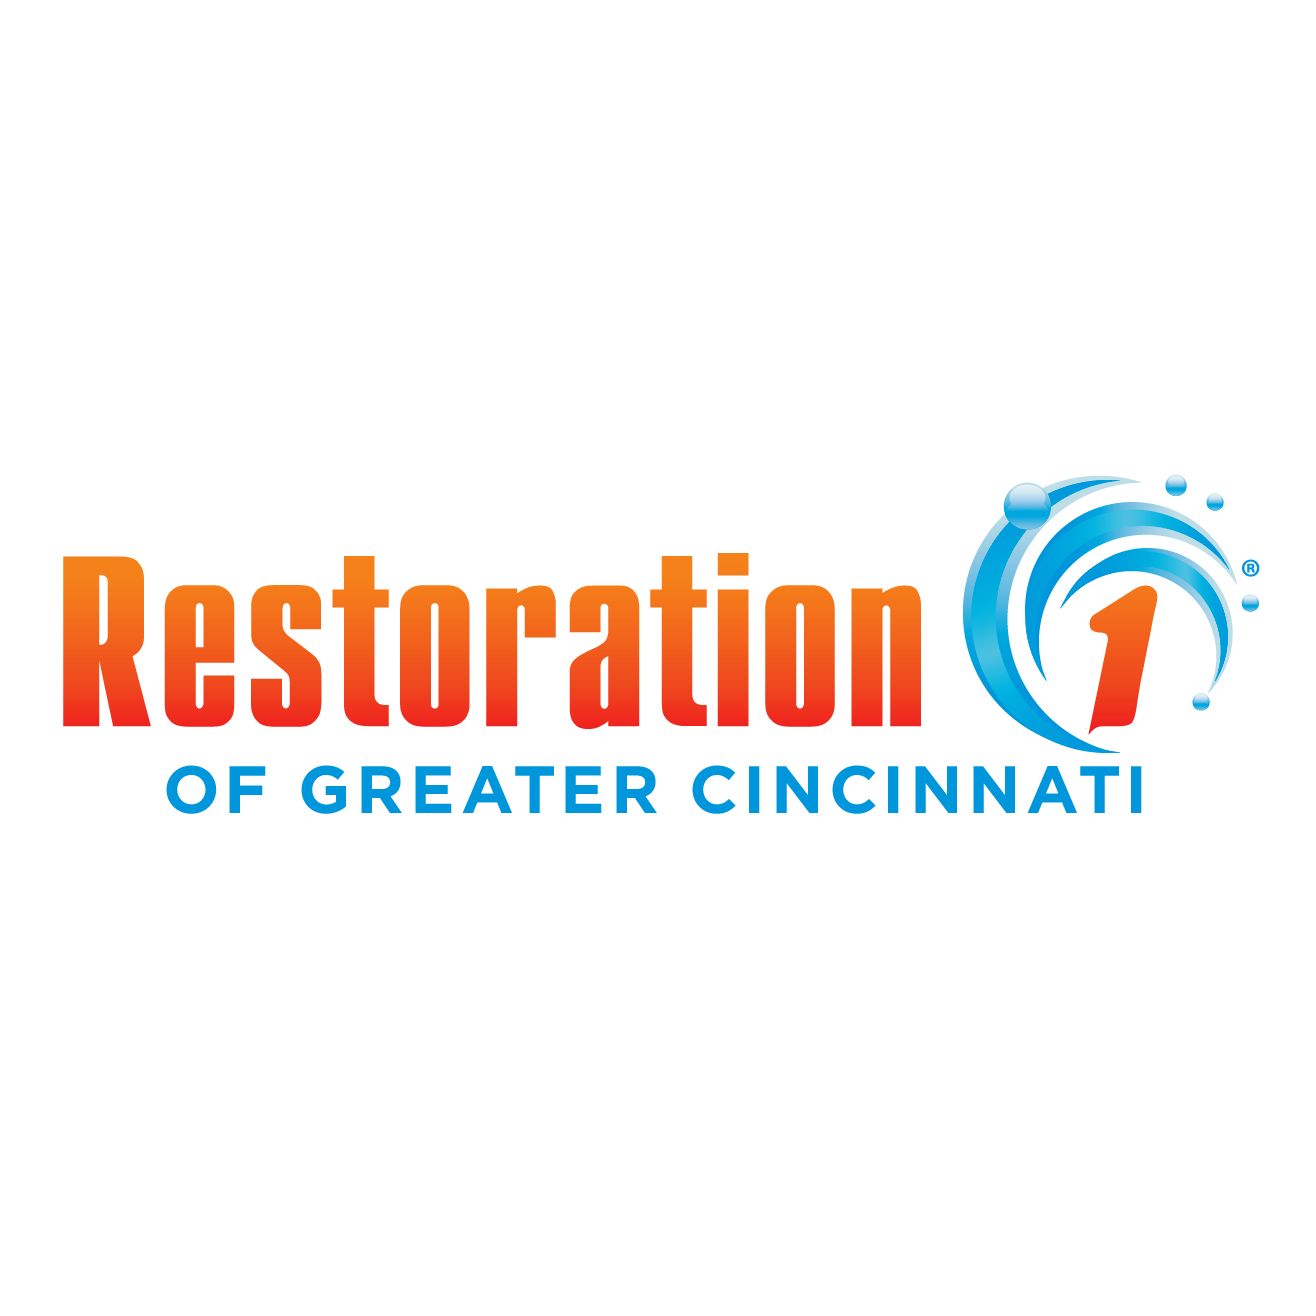 Restoration 1 of Greater Cincinnati